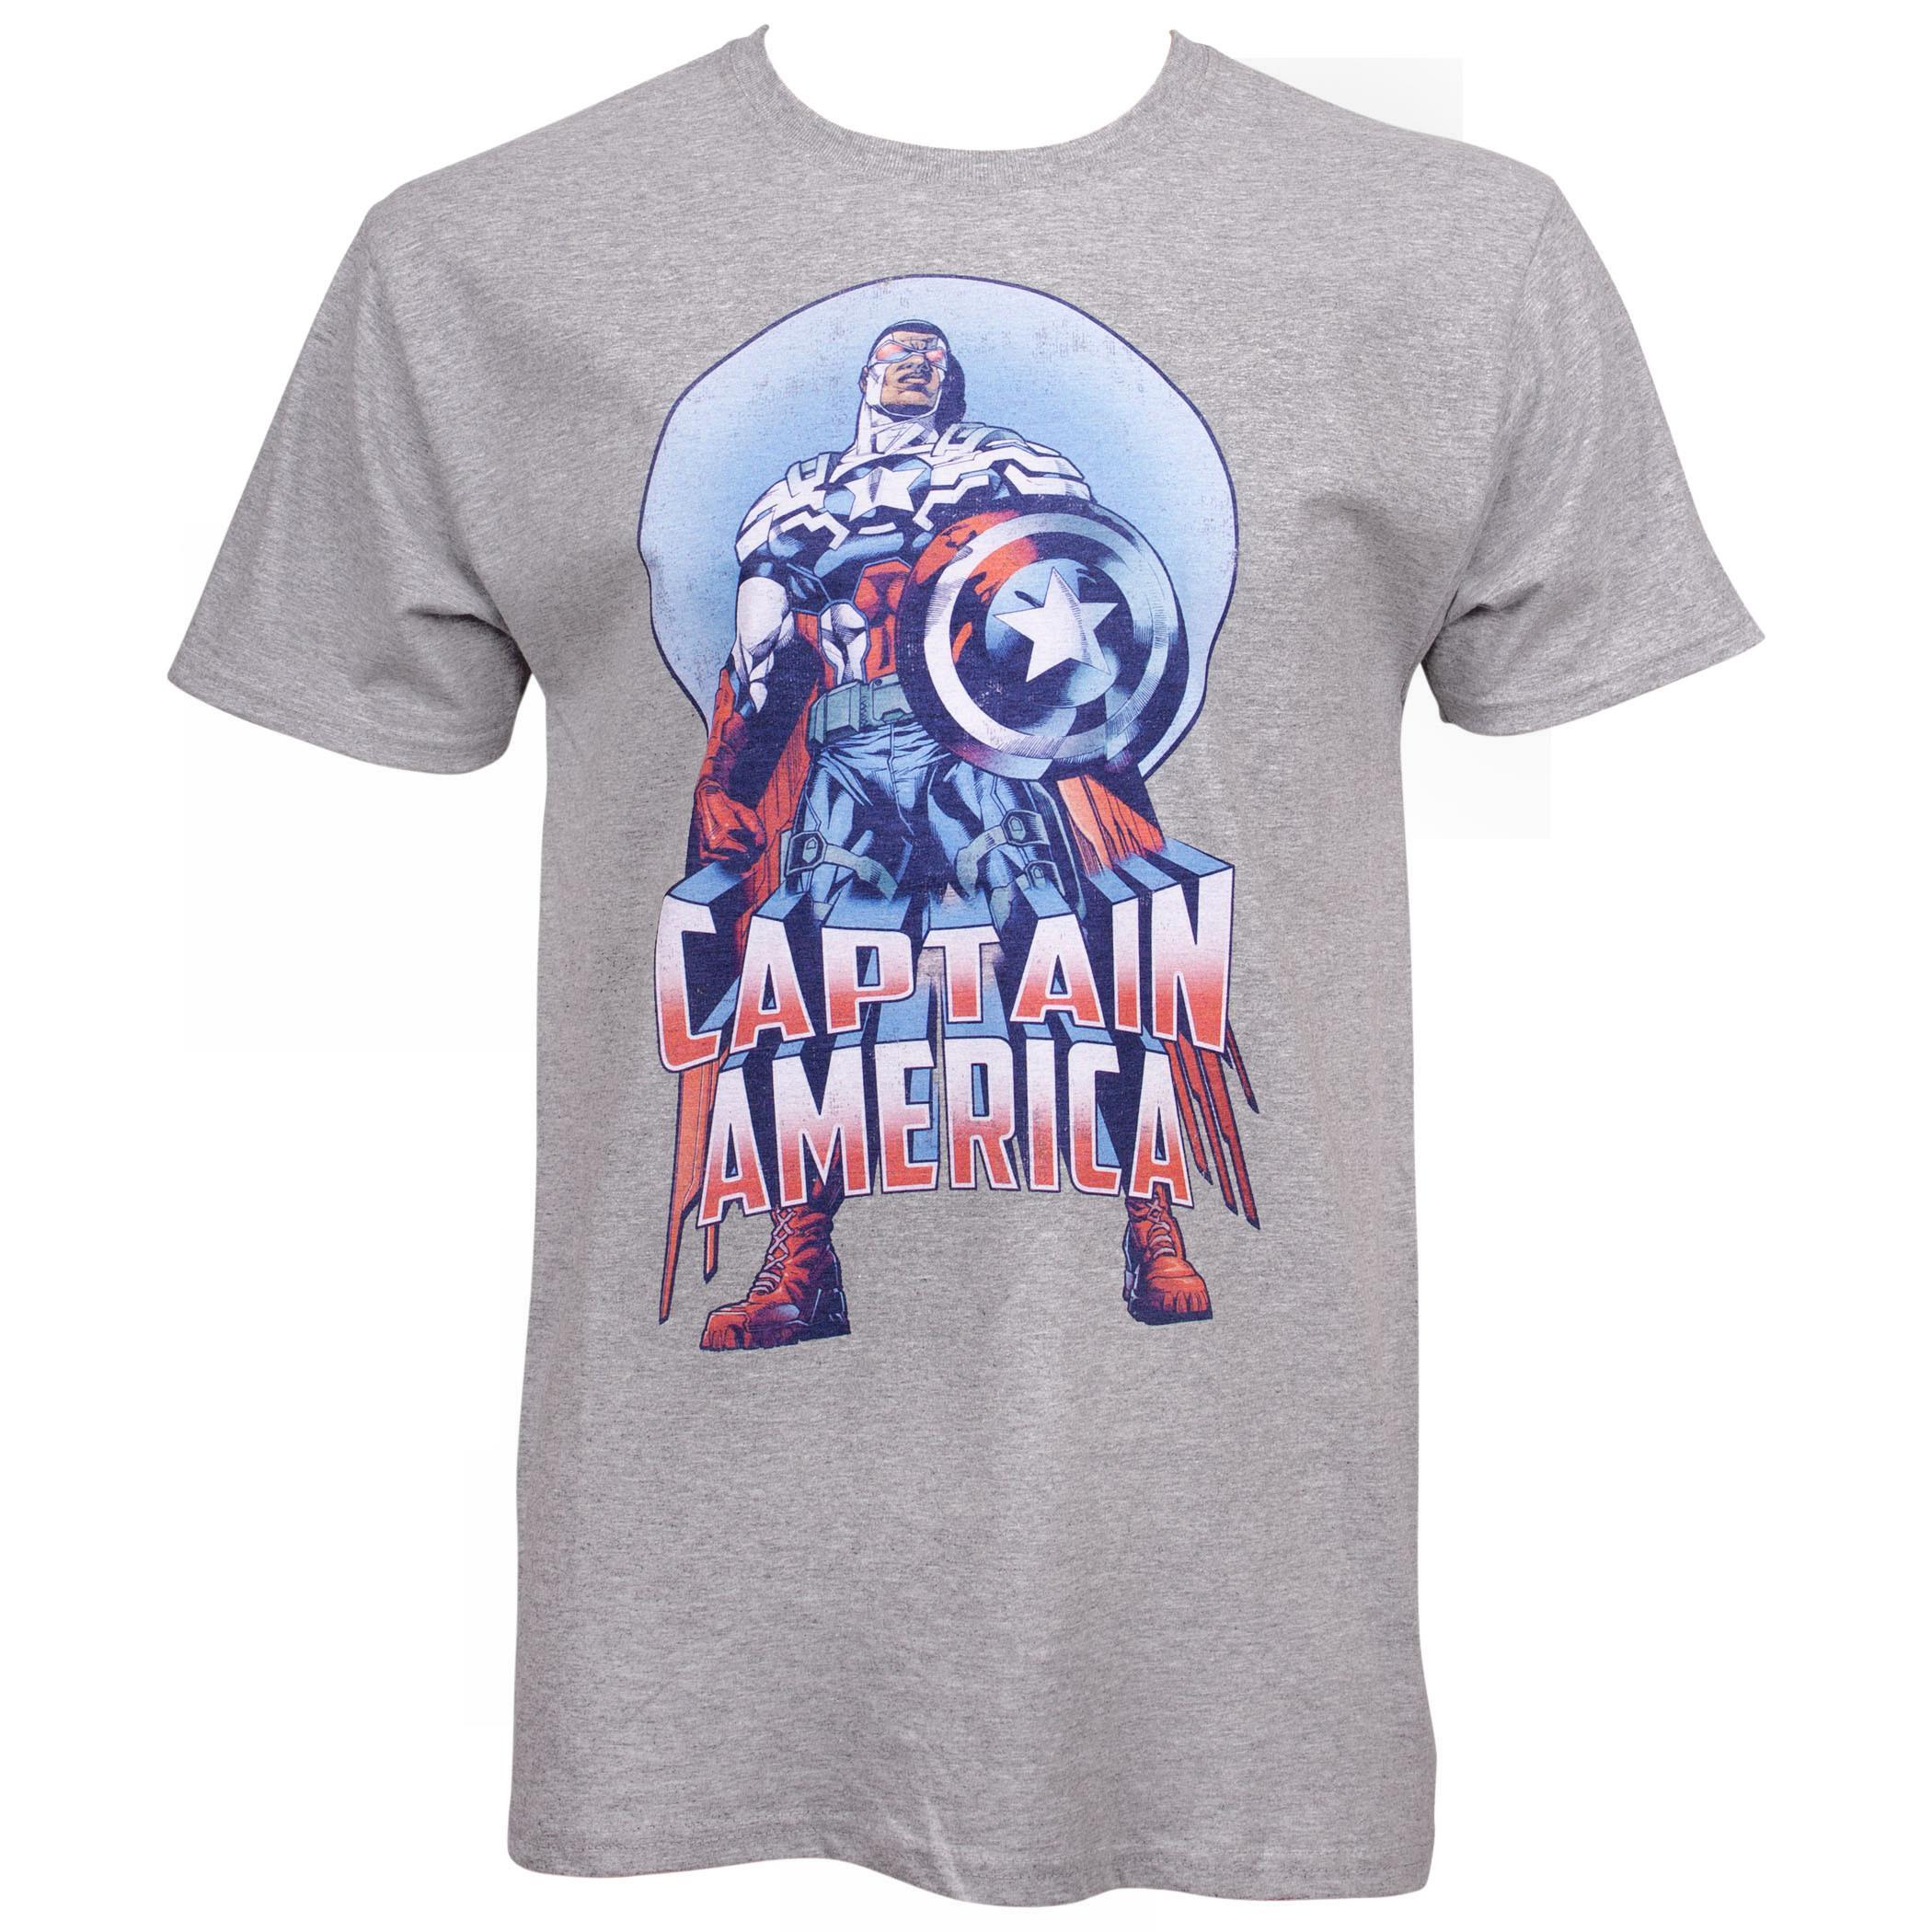 Captain America Falcon T-Shirt Small